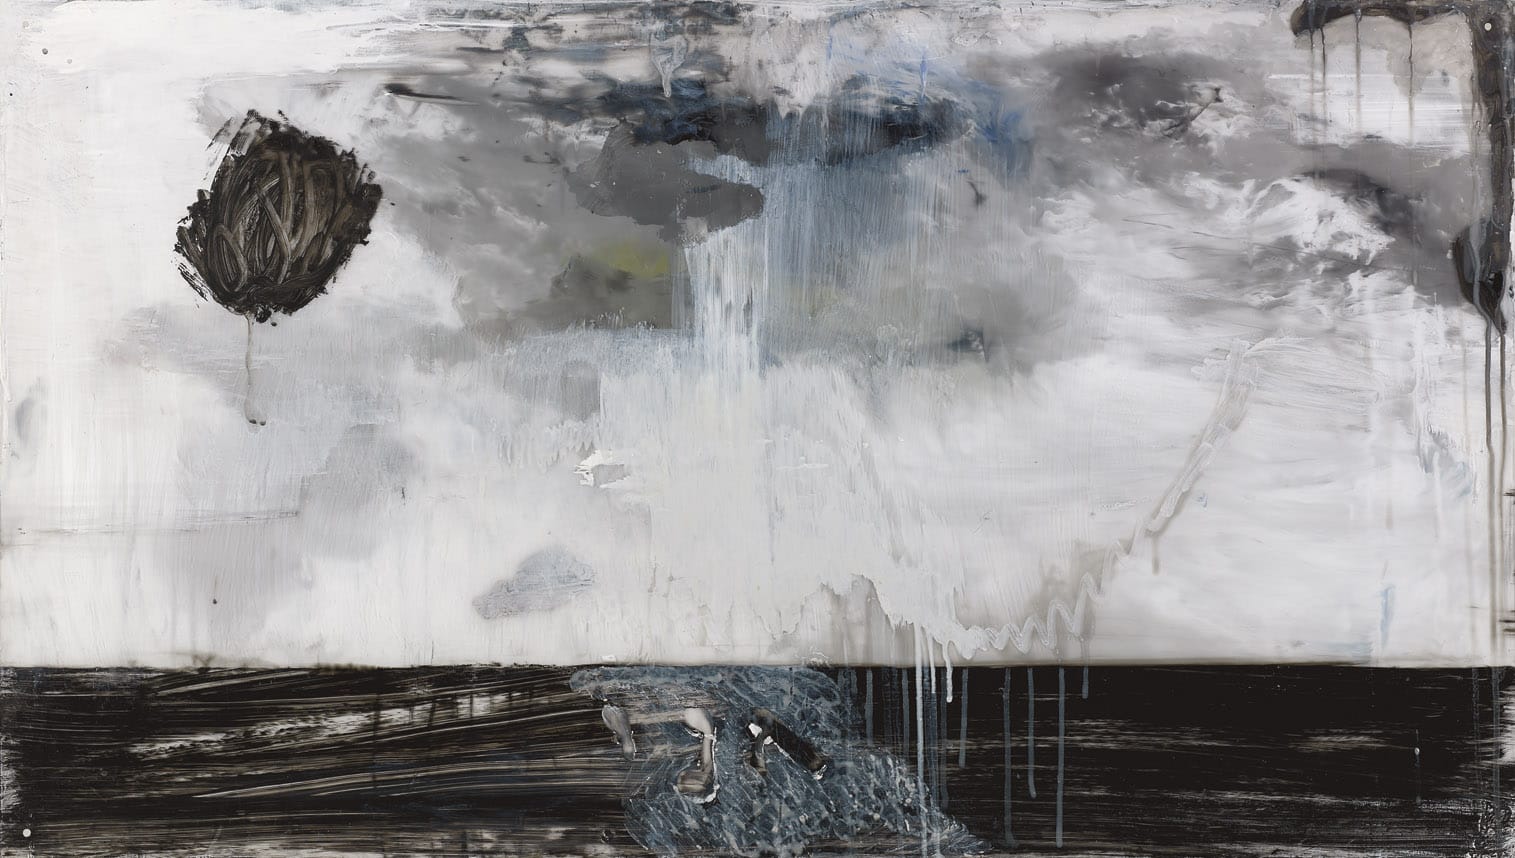 "אגם", עתליה שחר, אקריליק על פרספקס, 63X111 ס"מ, 2014